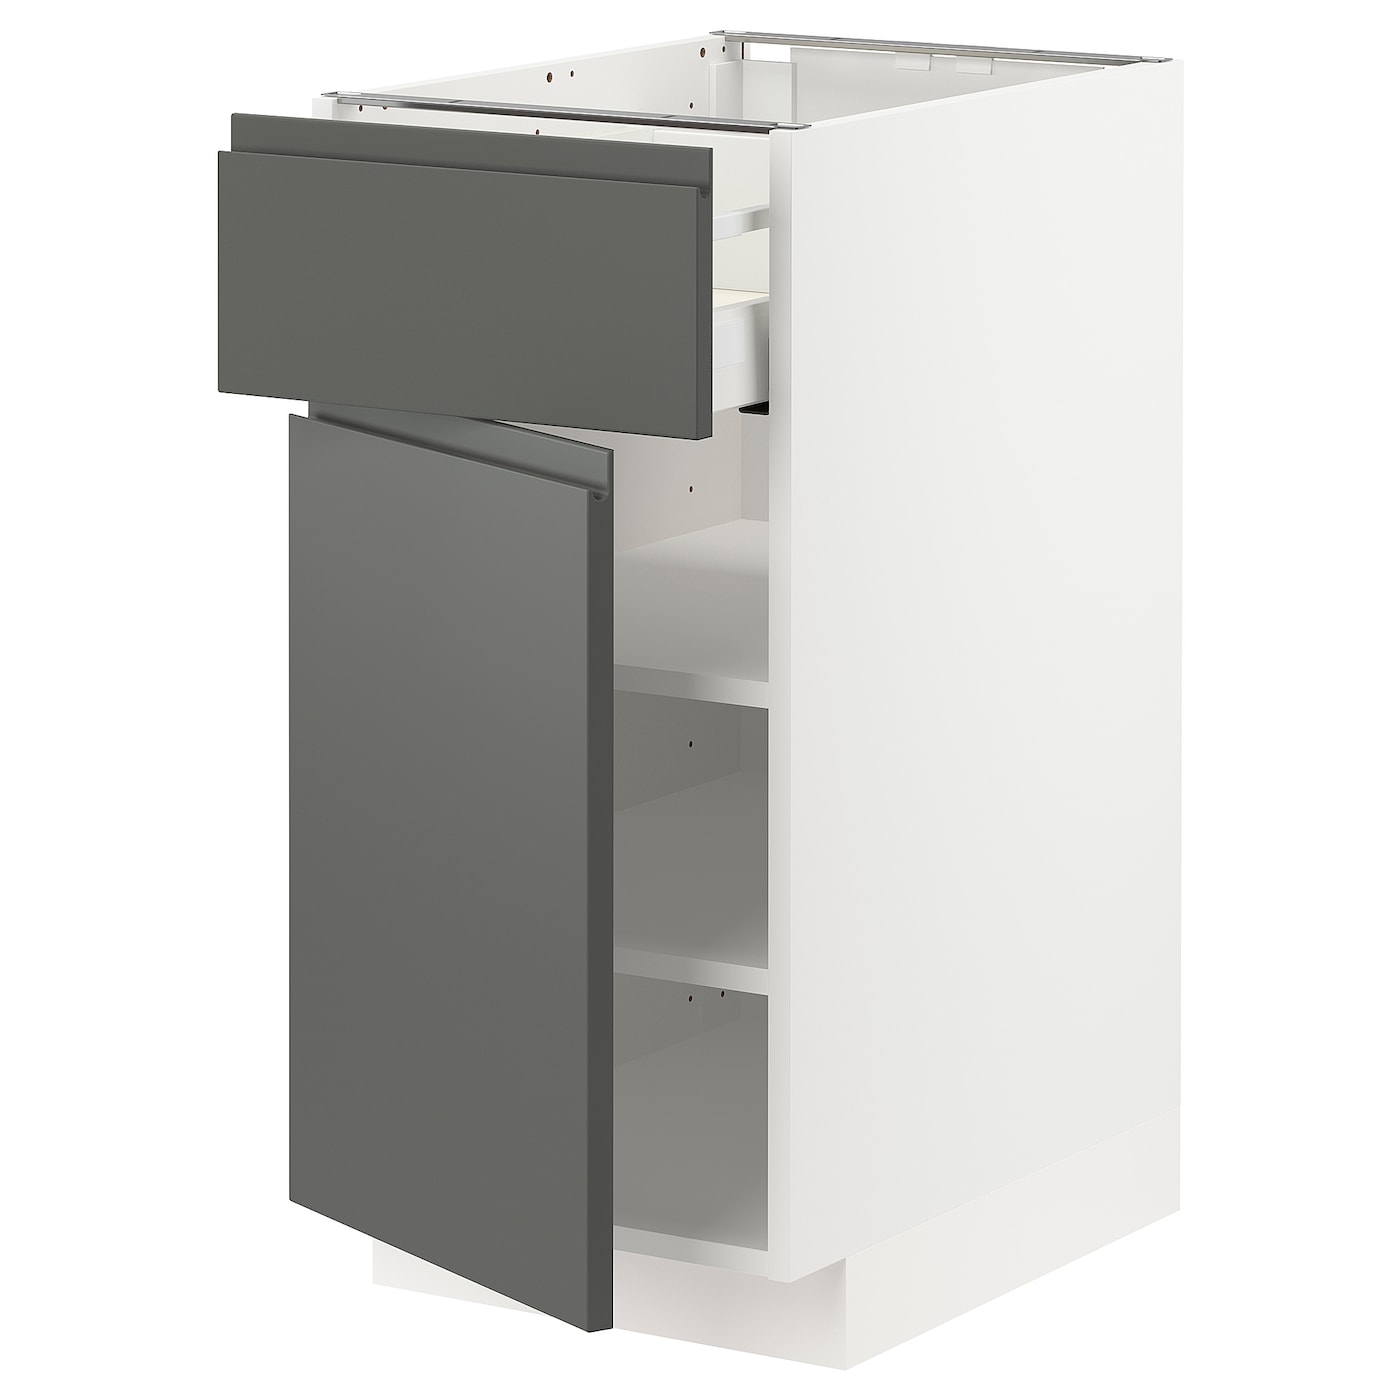 Напольный кухонный шкаф - IKEA METOD MAXIMERA, 88x62x40см, белый/серый, МЕТОД МАКСИМЕРА ИКЕА